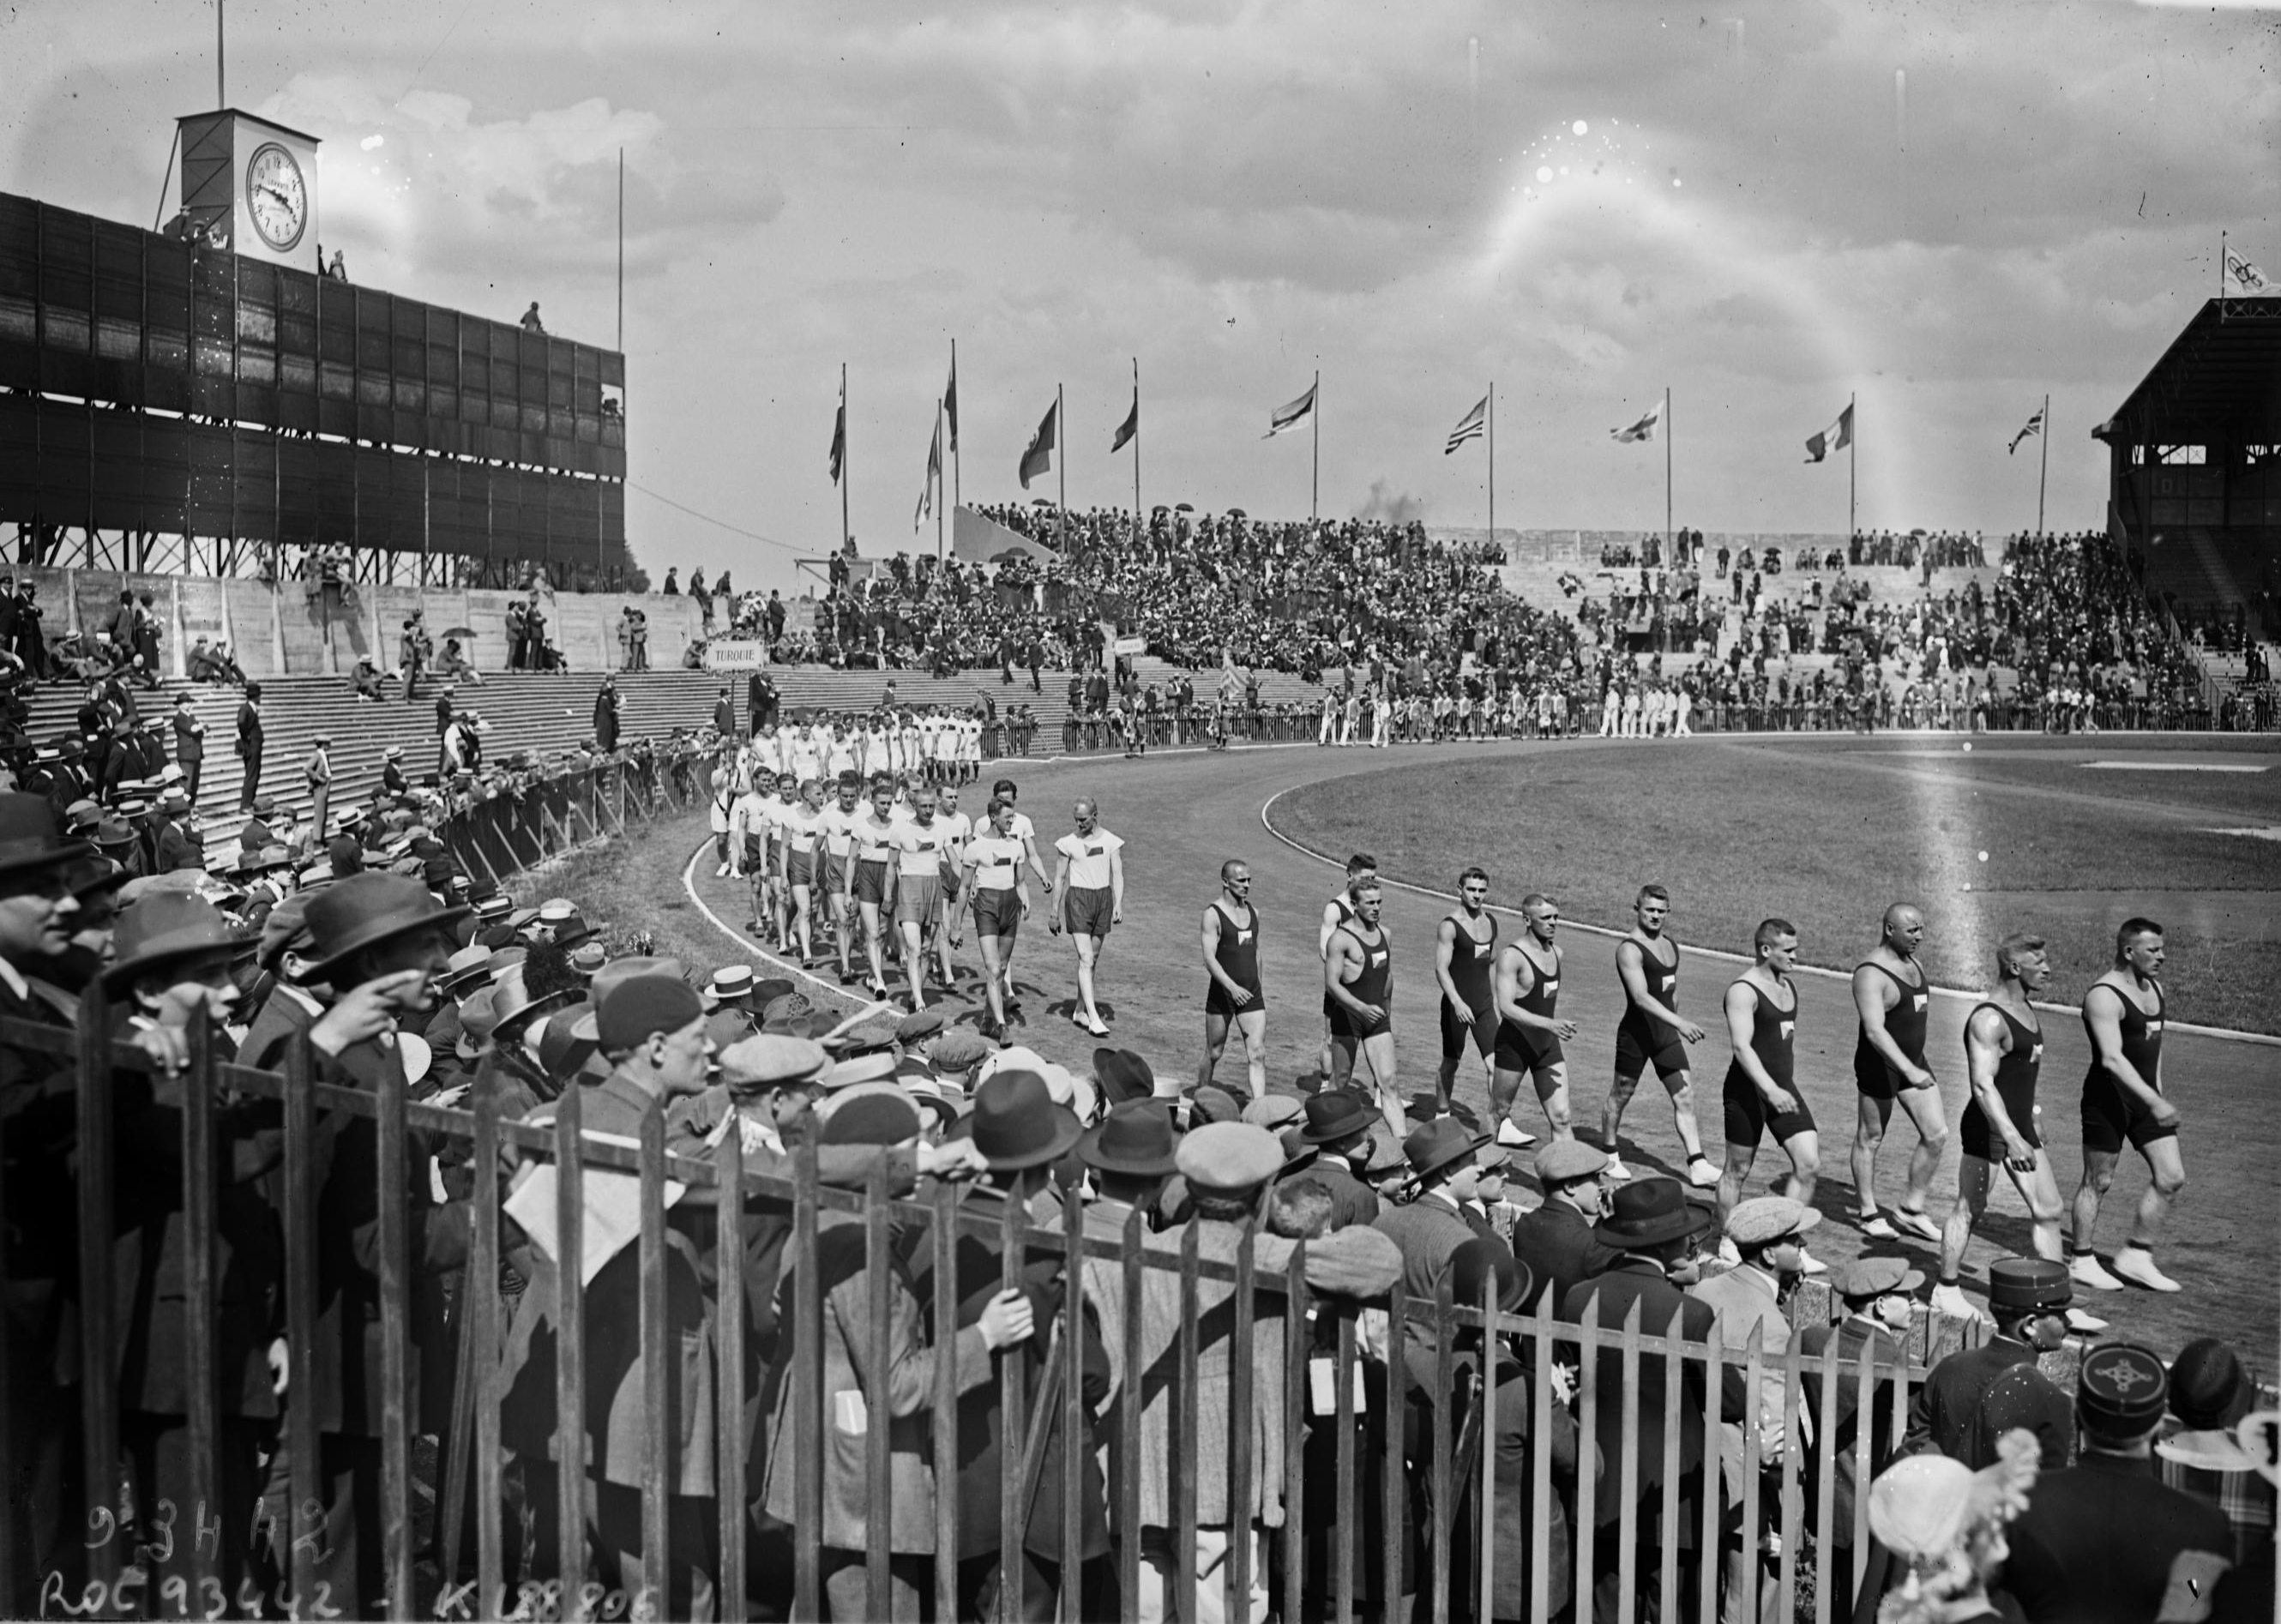 La cérémonie d'ouverture des Jeux olympiques de 1924 s'était déroulée dans le stade de Colombes. Fonds Bibliothèque nationale de France